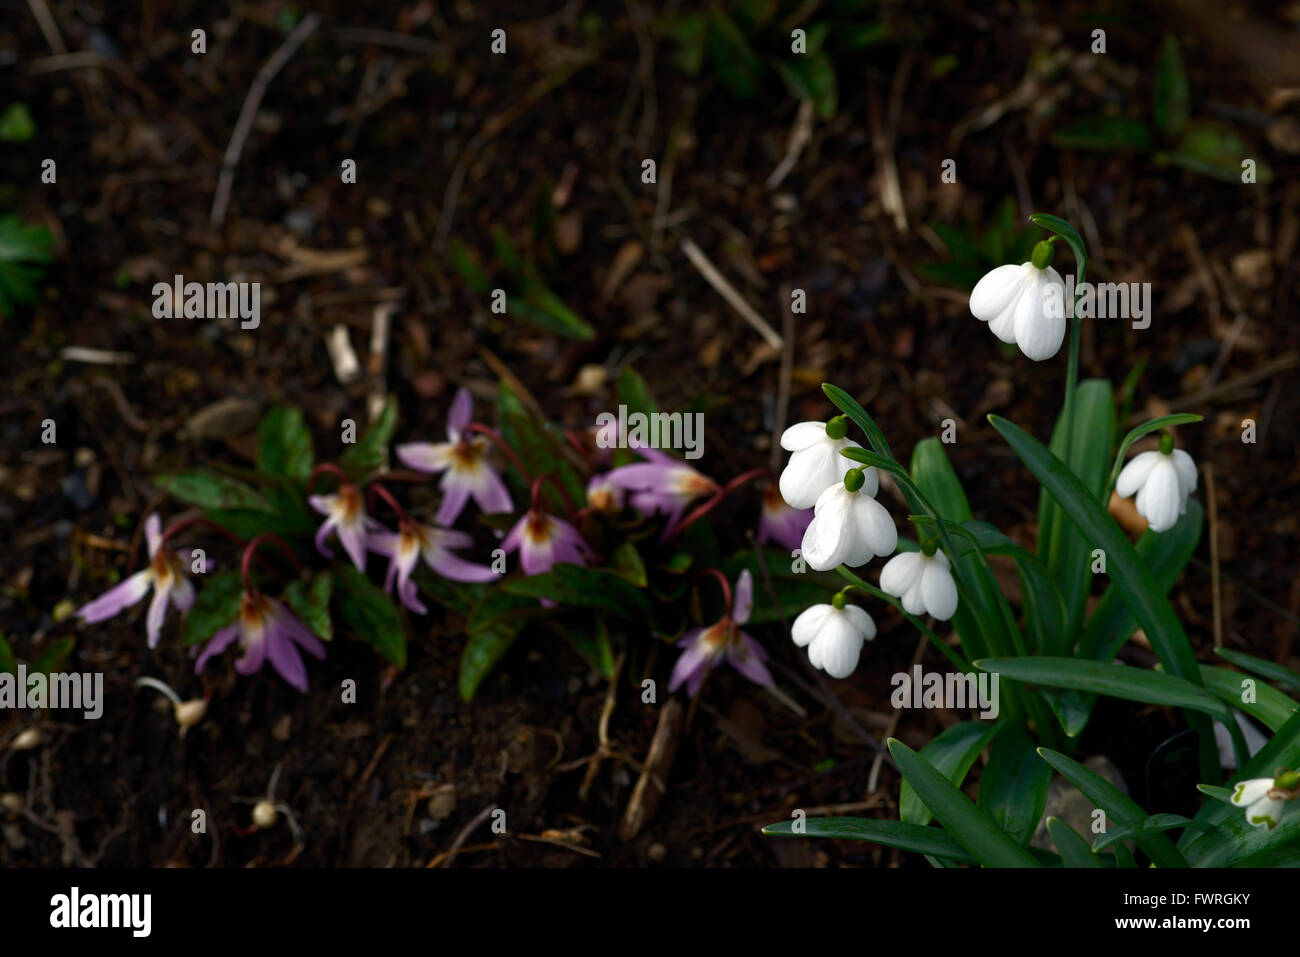 Galanthus Plicatus E A Bowles weißen poculiforme Albino Snowdrop Schneeglöckchen Frühlingsblumen Blume RM Floral Stockfoto